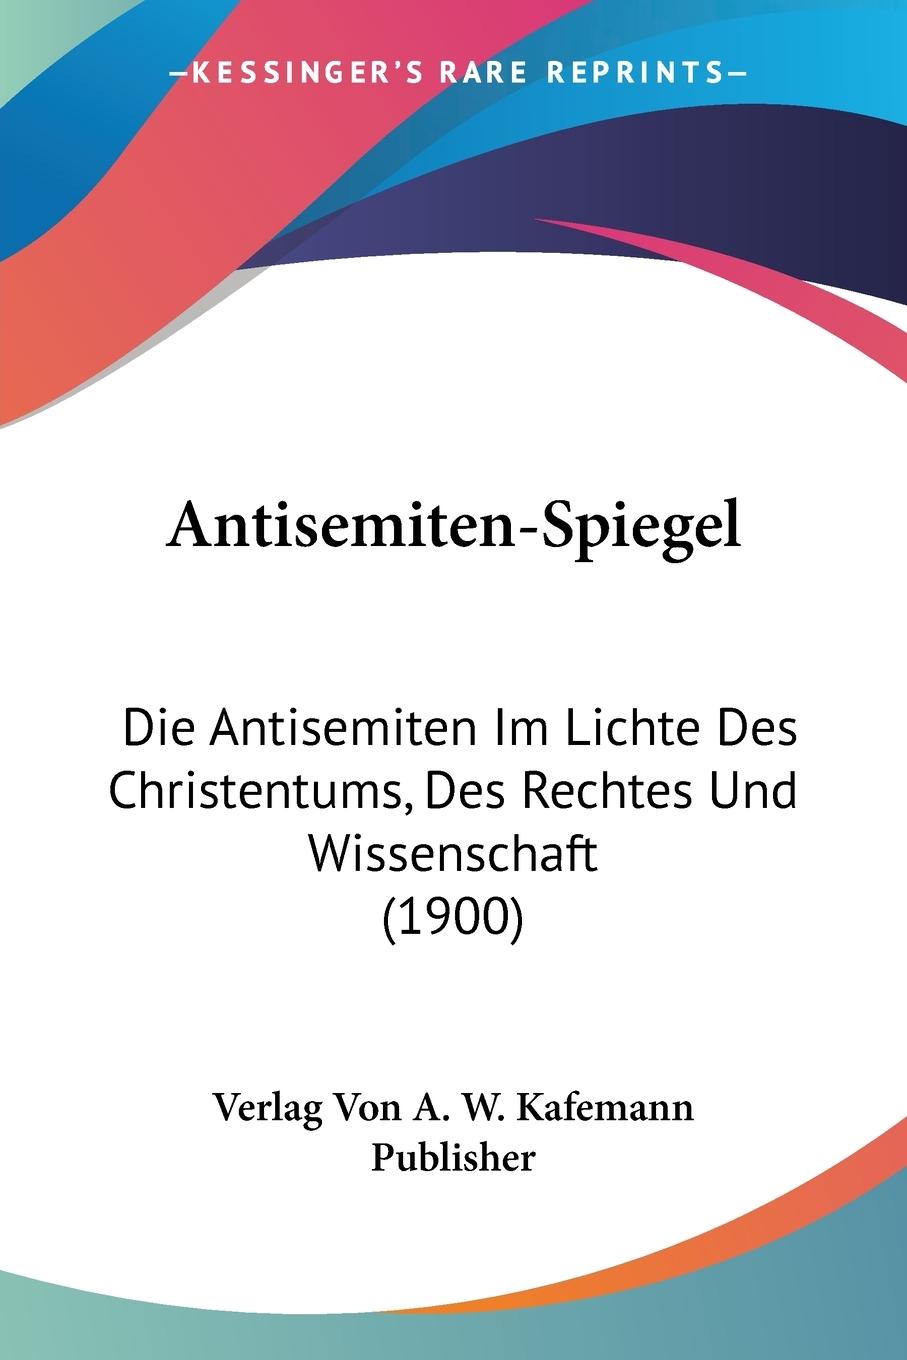 Antisemiten-Spiegel - Verlag von A. W. Kafemann Publisher